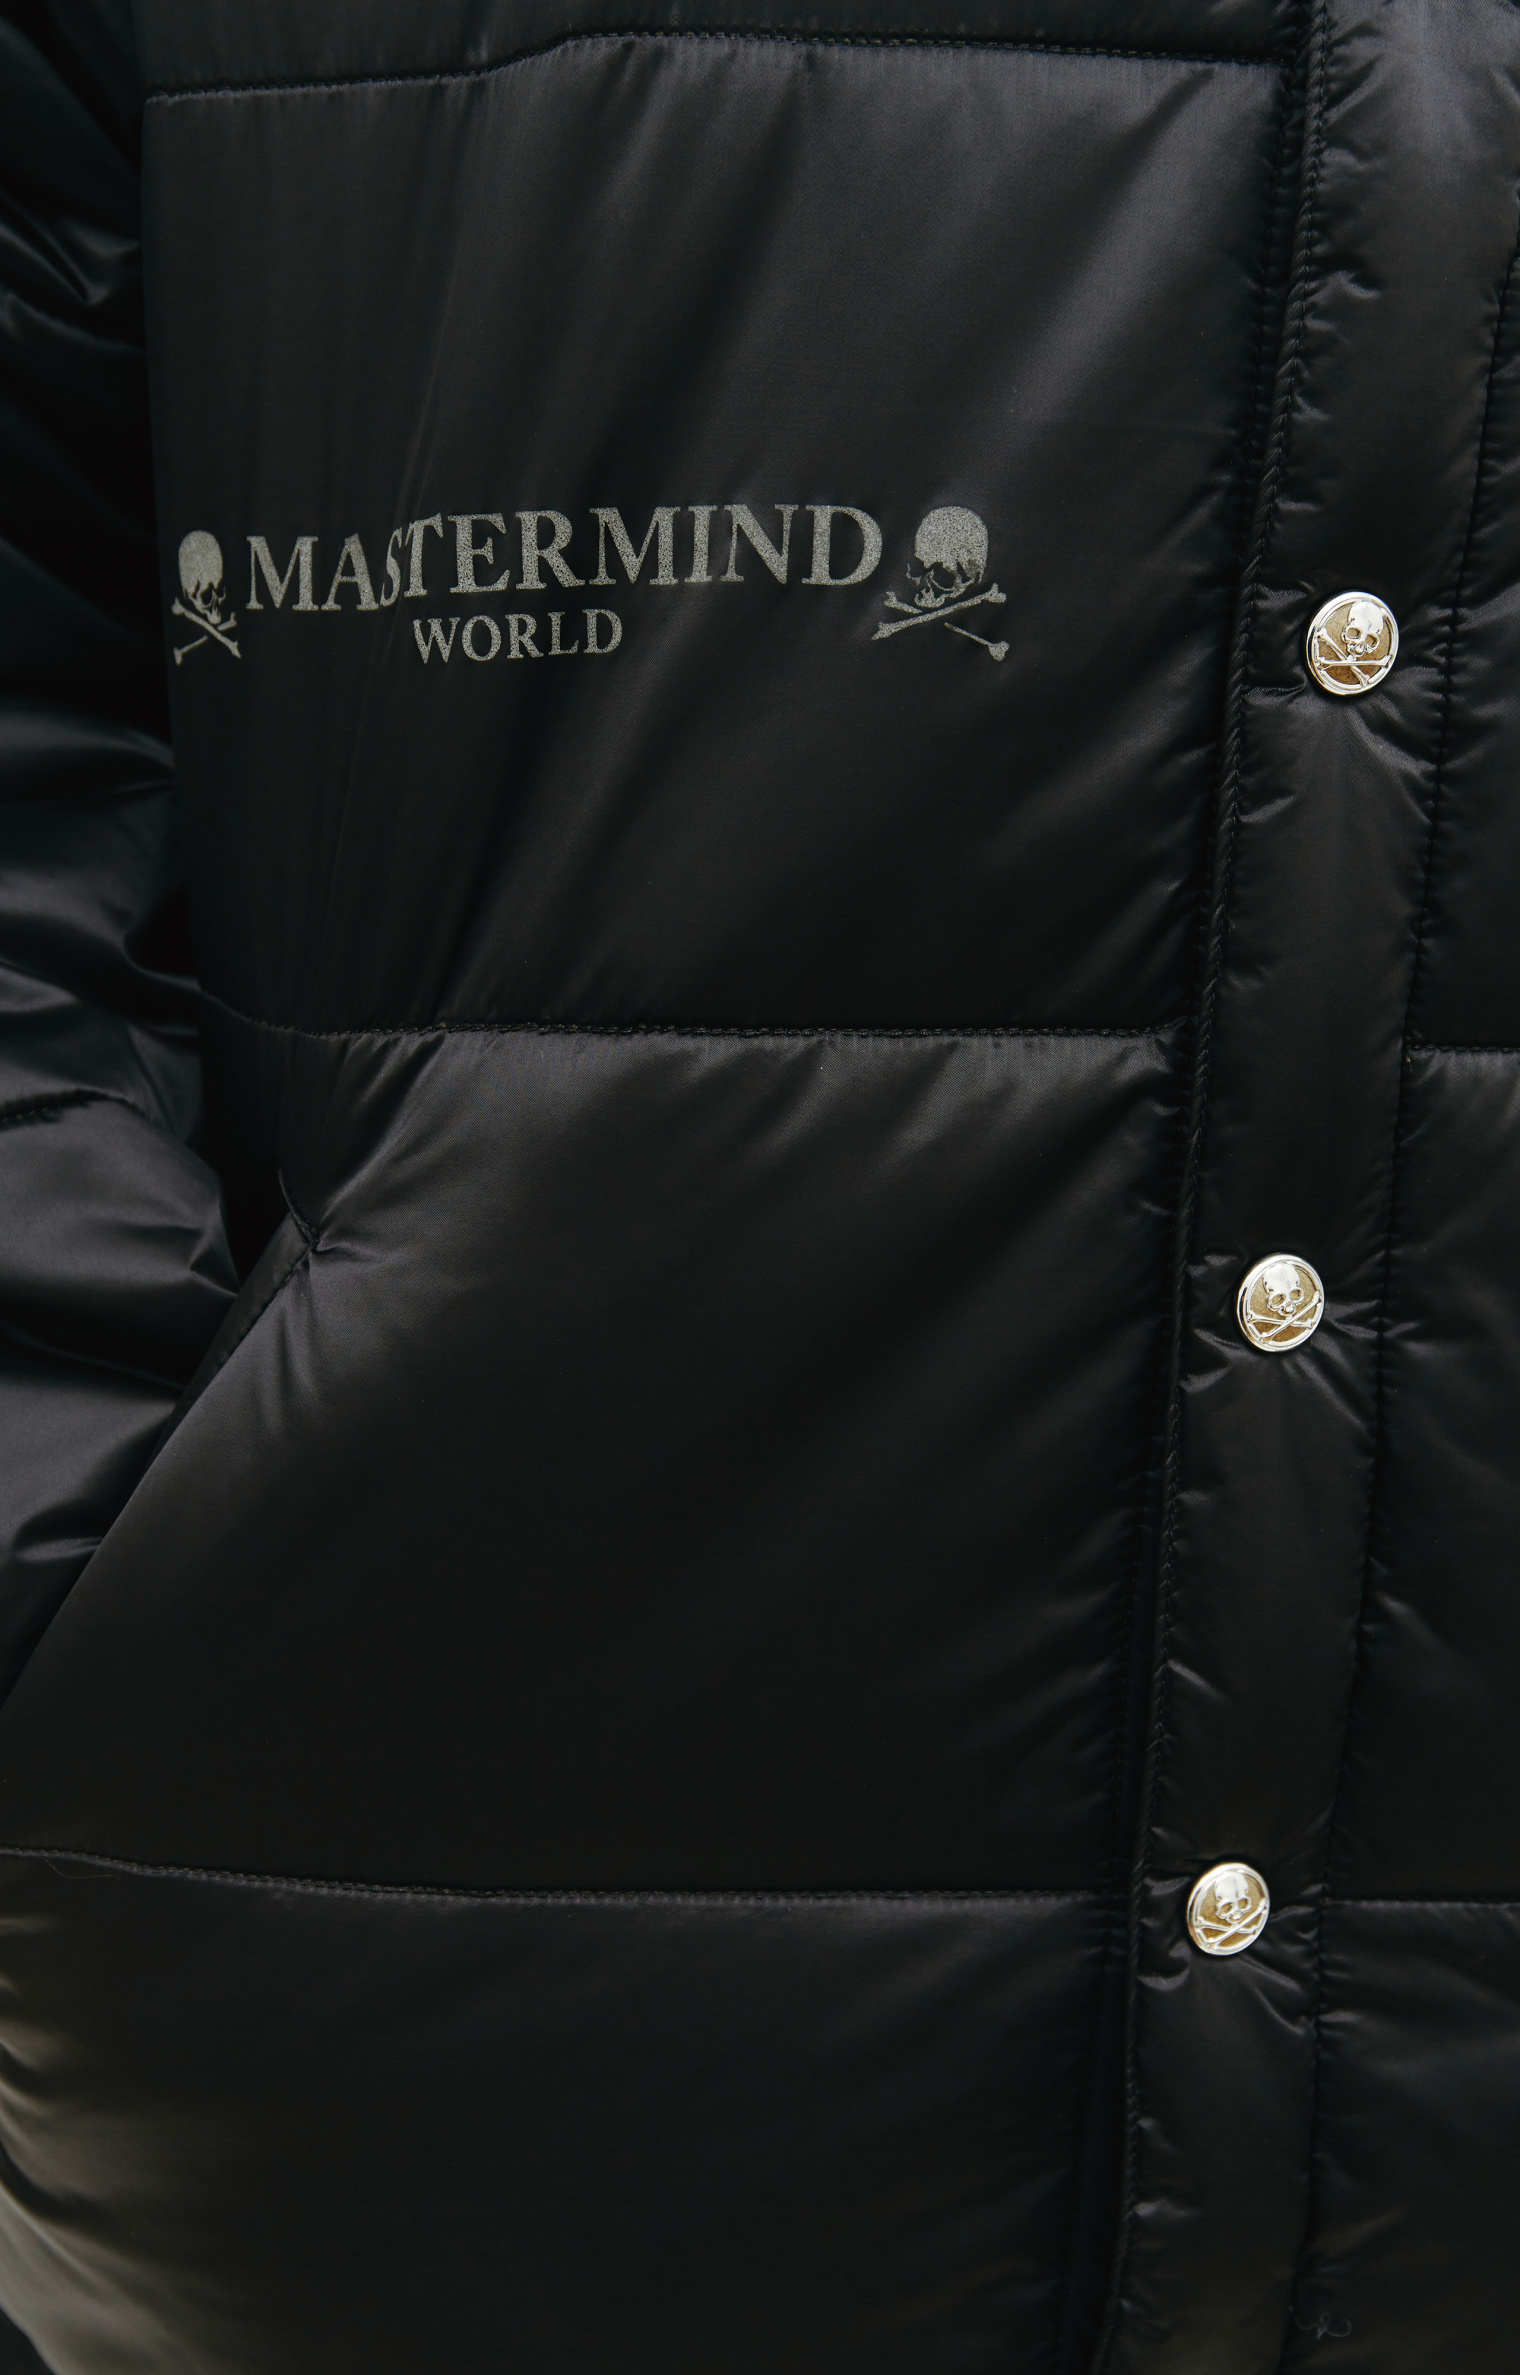 Mastermind WORLD Nylon padded jacket